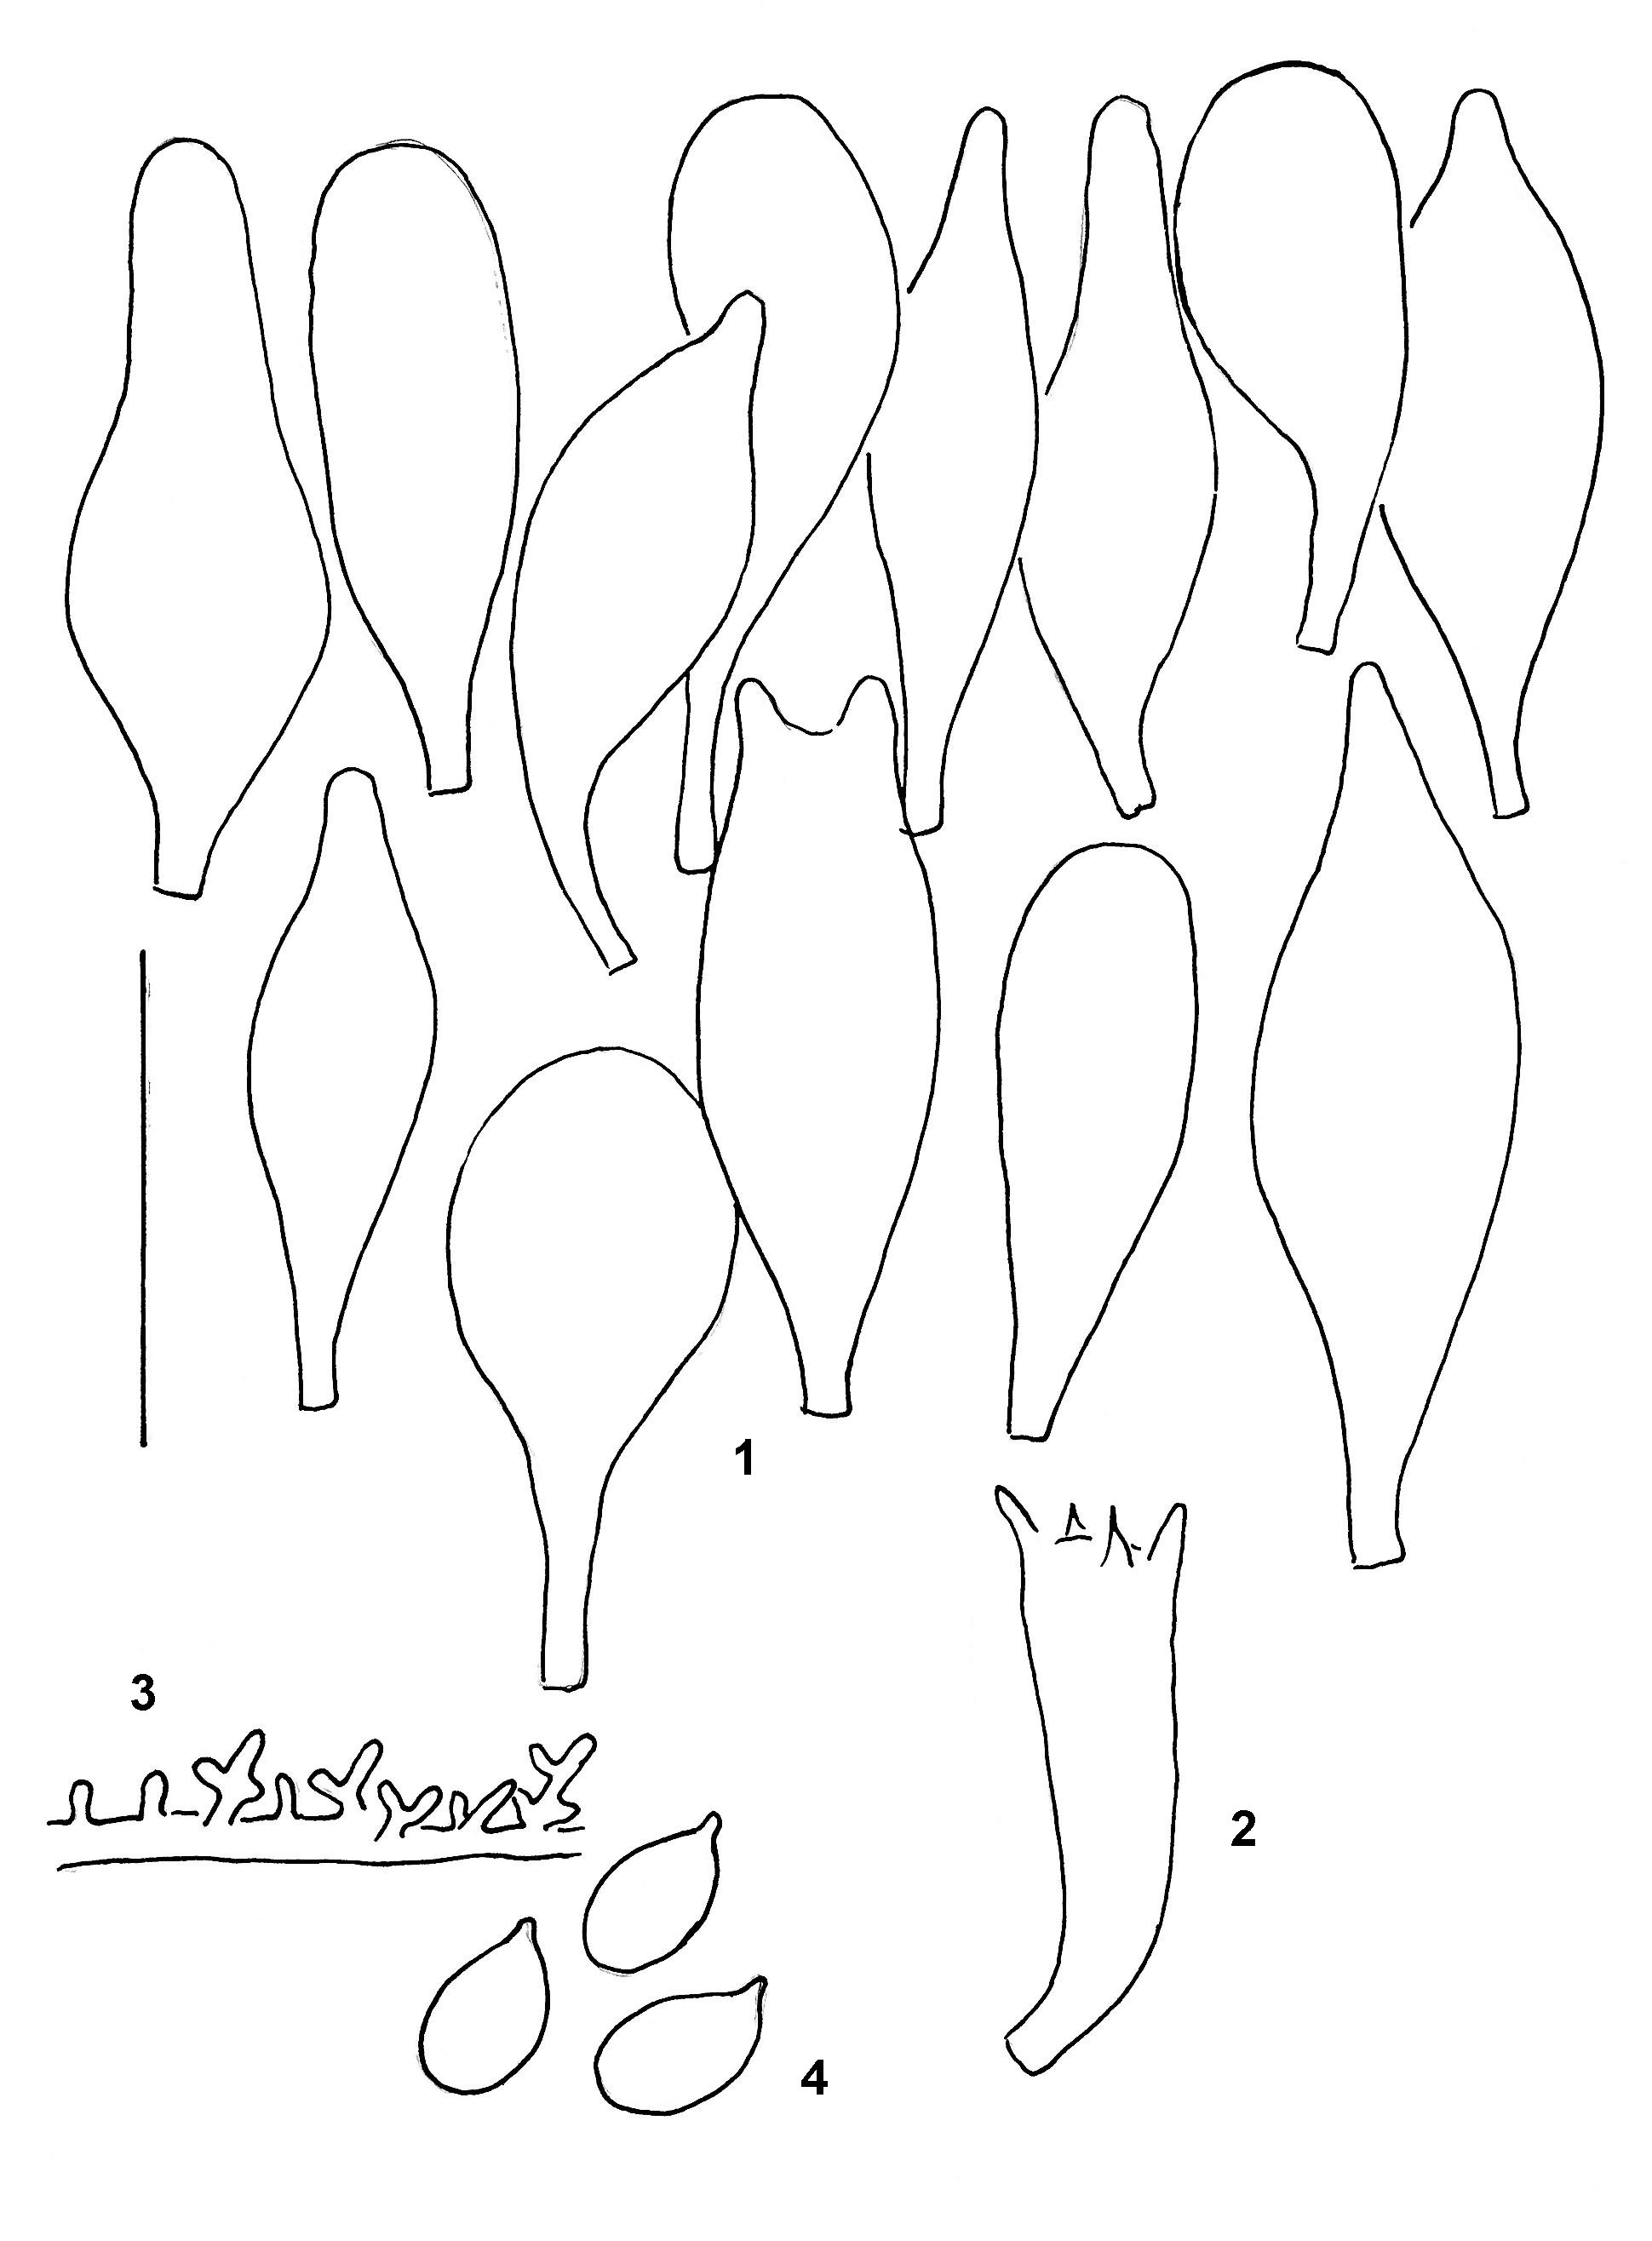 Stilksporesopper: Mycena scirpicola.